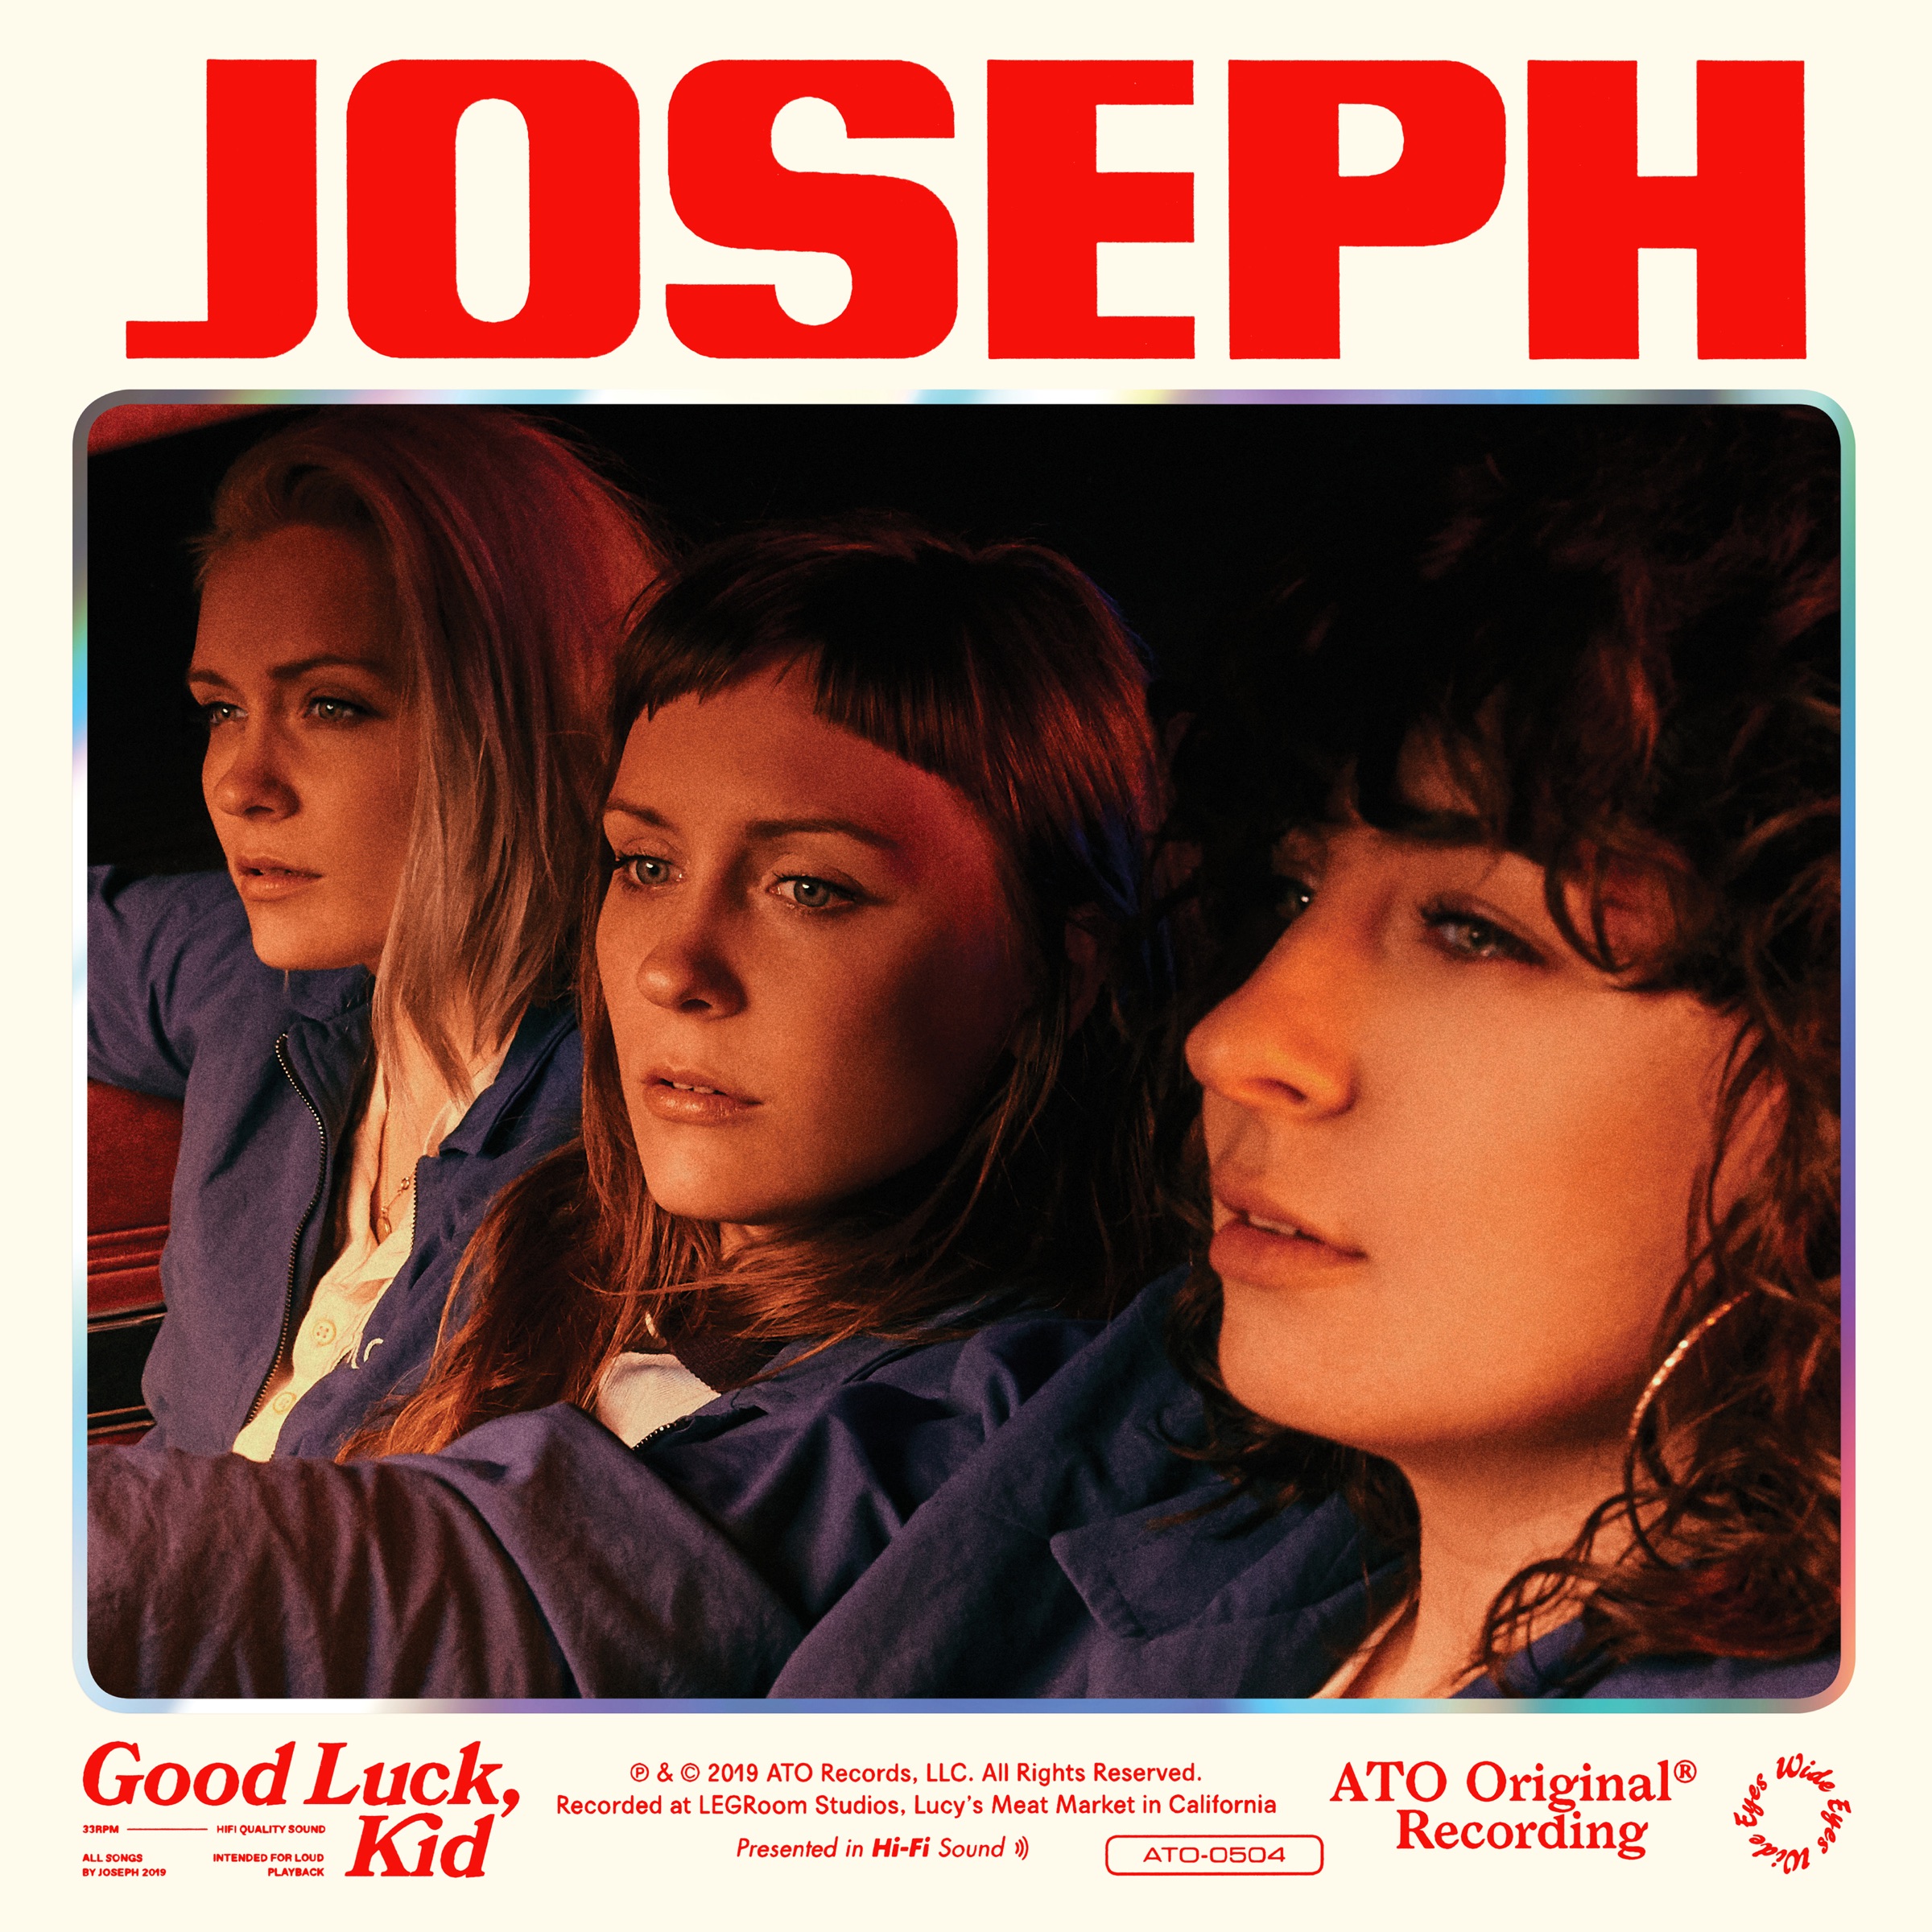 Album Art for "Good Luck, Kit" by Joseph